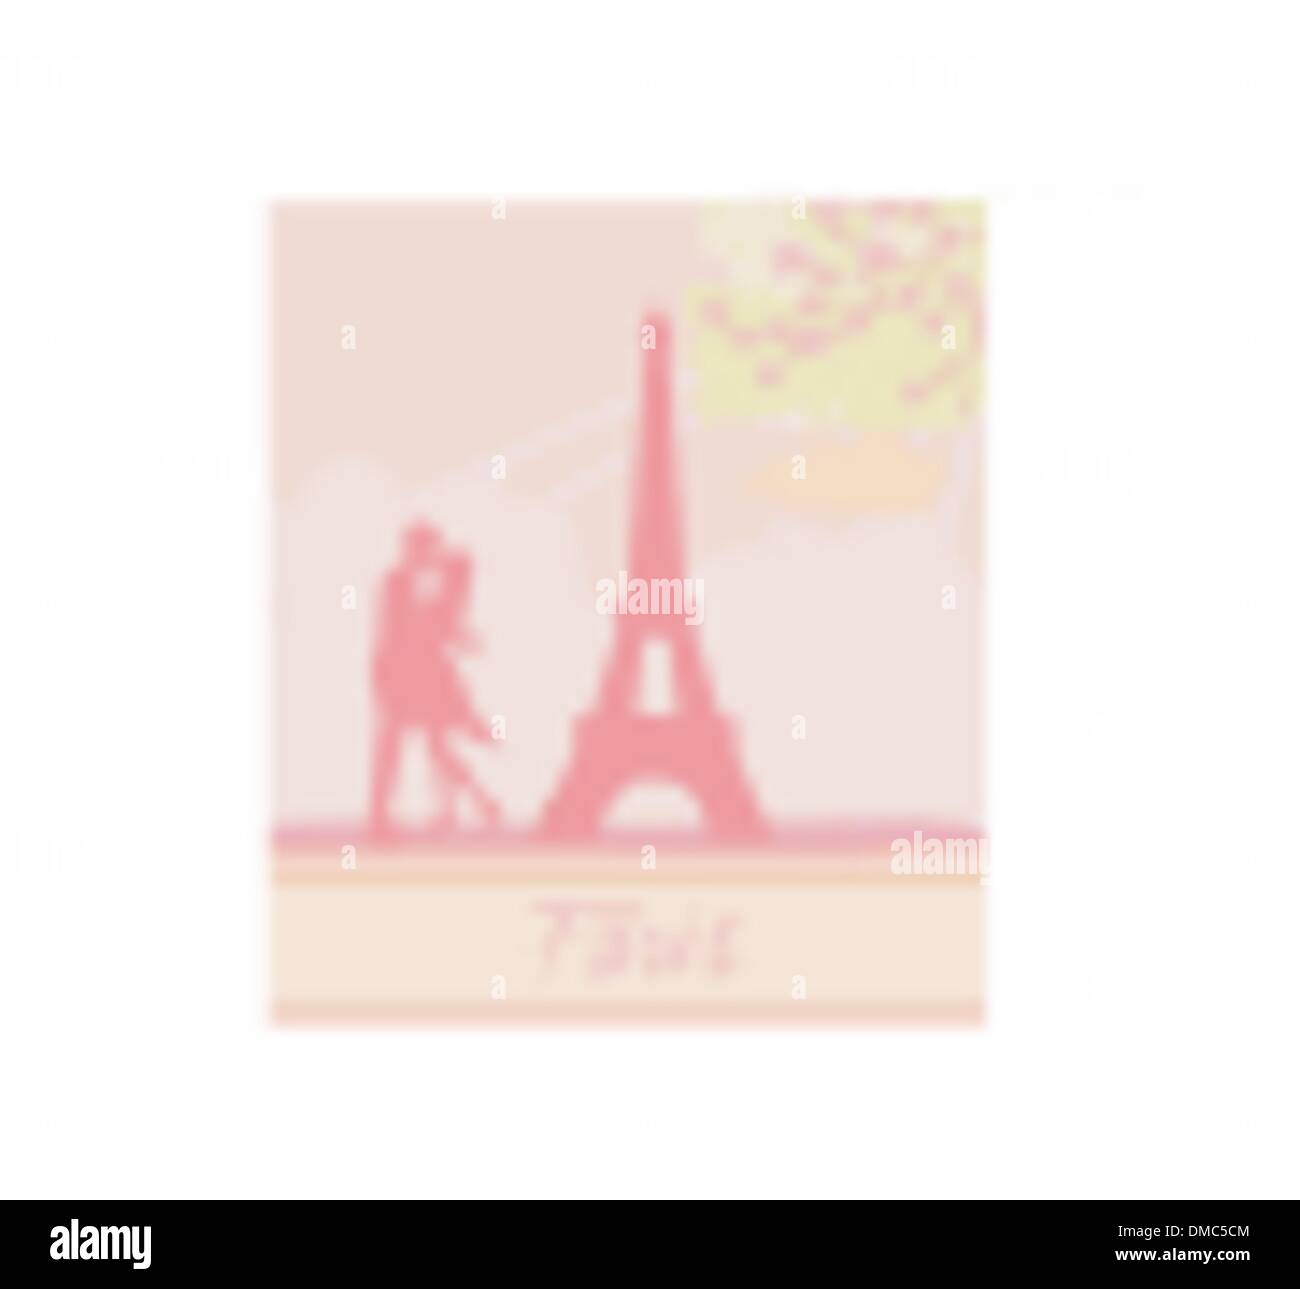 Coppia romantica a Parigi kissing vicino alla Torre Eiffel scheda rétro Illustrazione Vettoriale